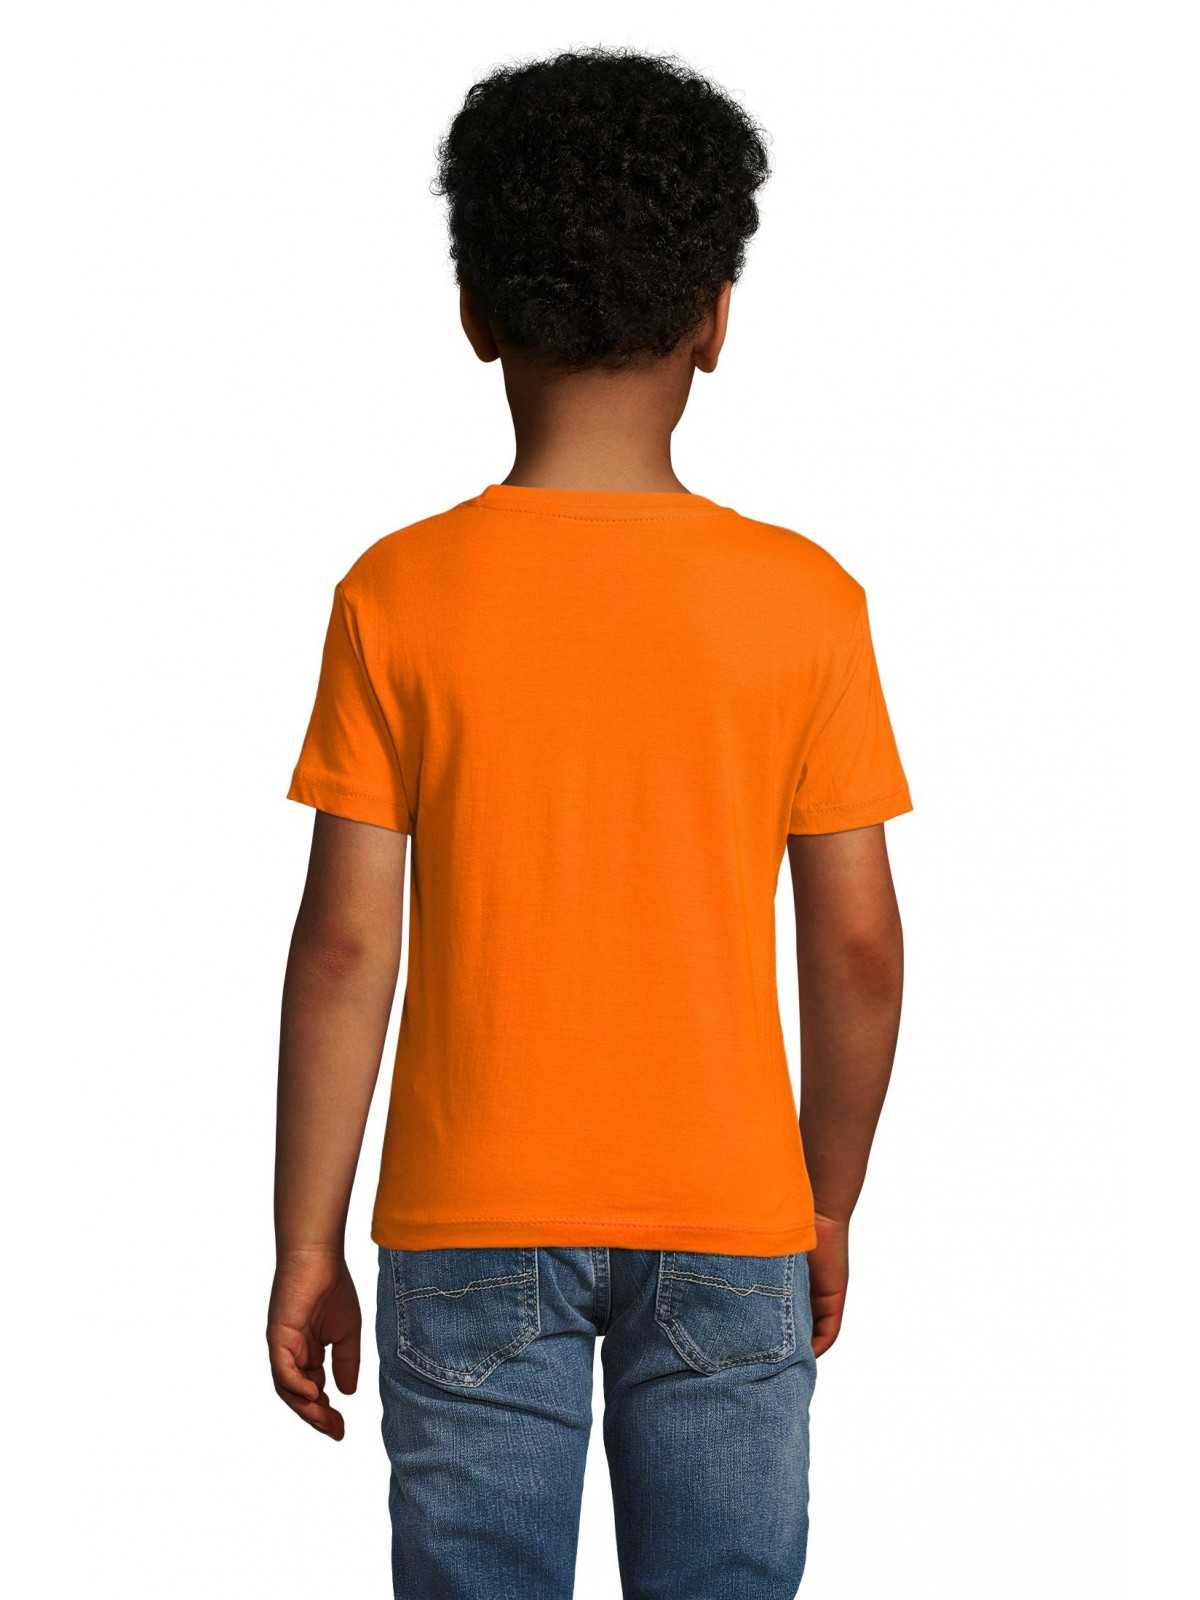 26-723 Tee-shirt enfant Jersey personnalisé